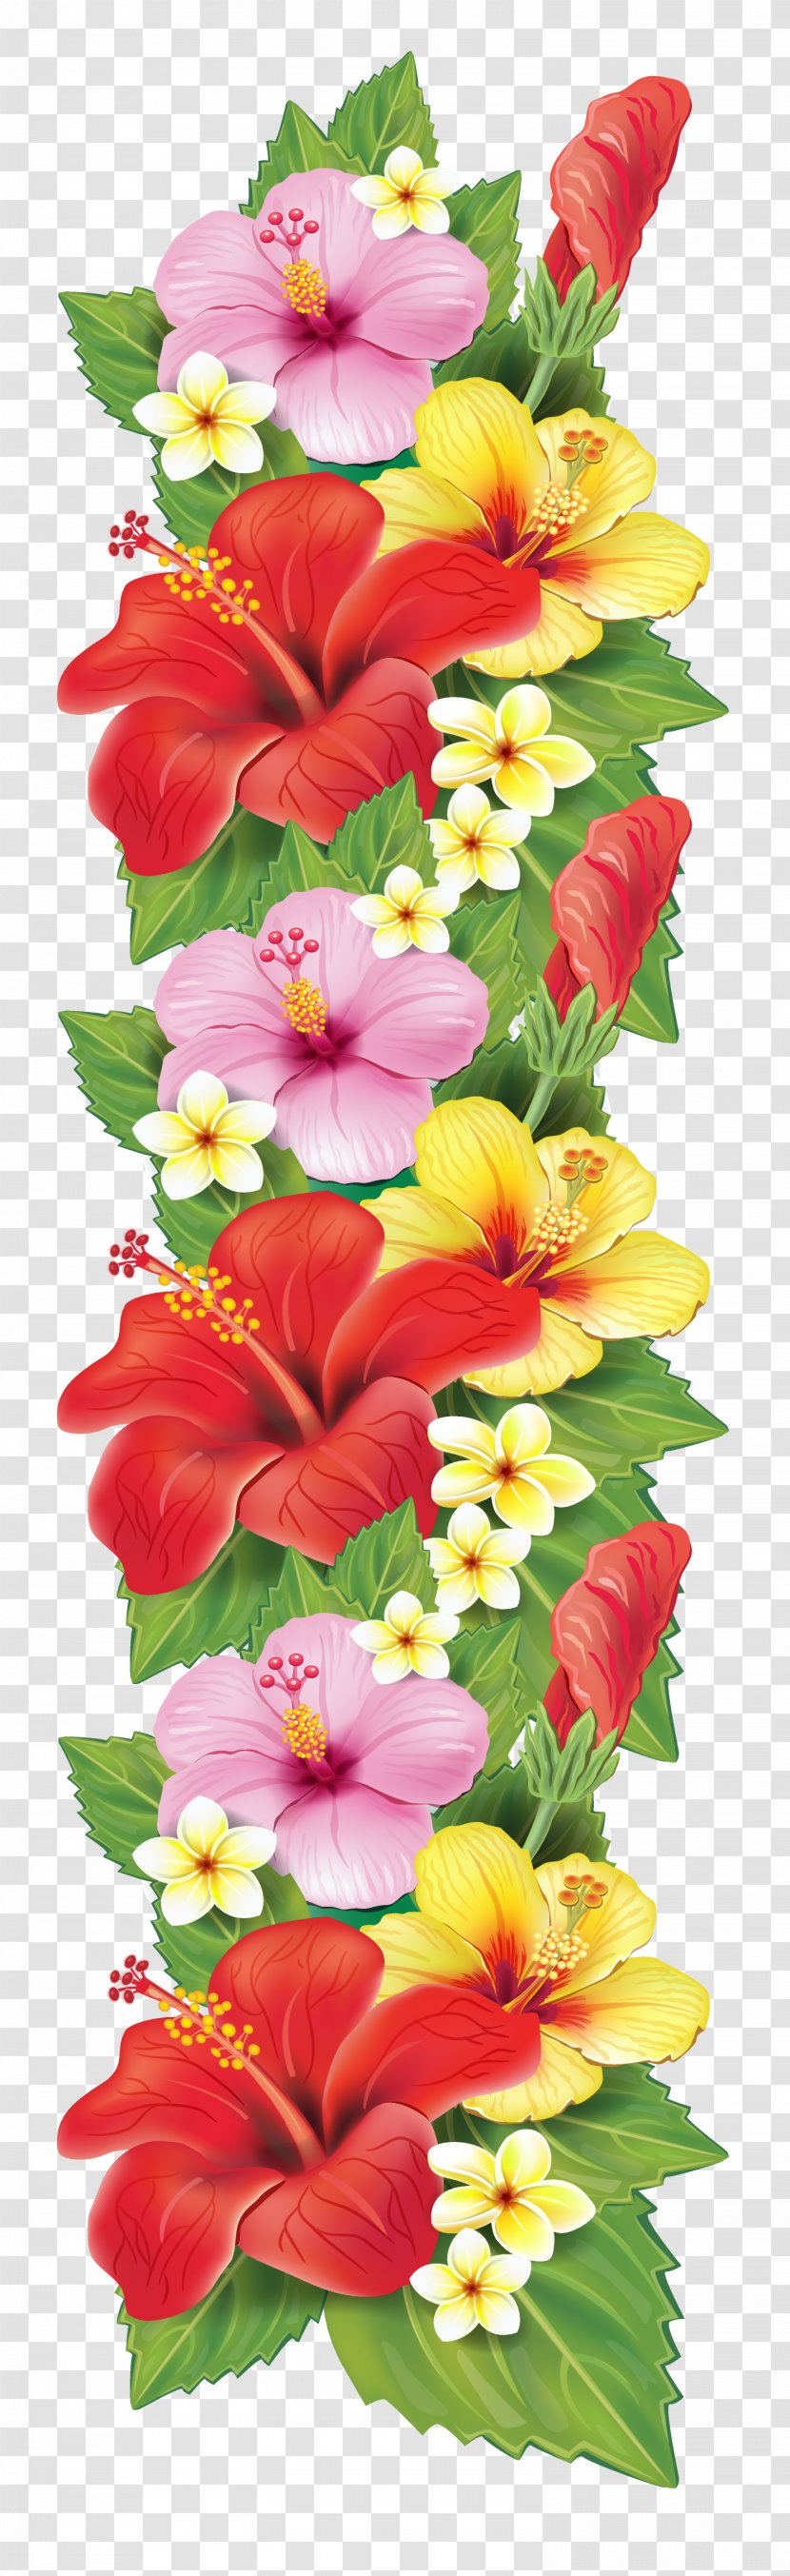 Flower Bouquet Decorative Arts Clip Art - Artificial - Flowers Transparent PNG